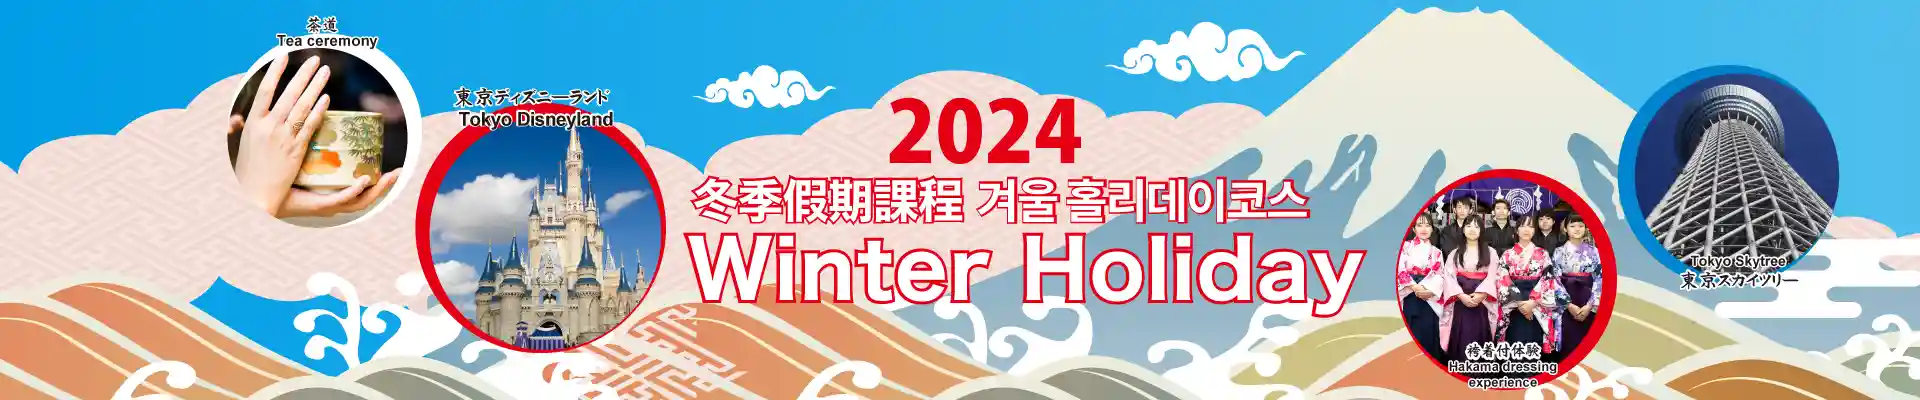 2024 Winter Holiday